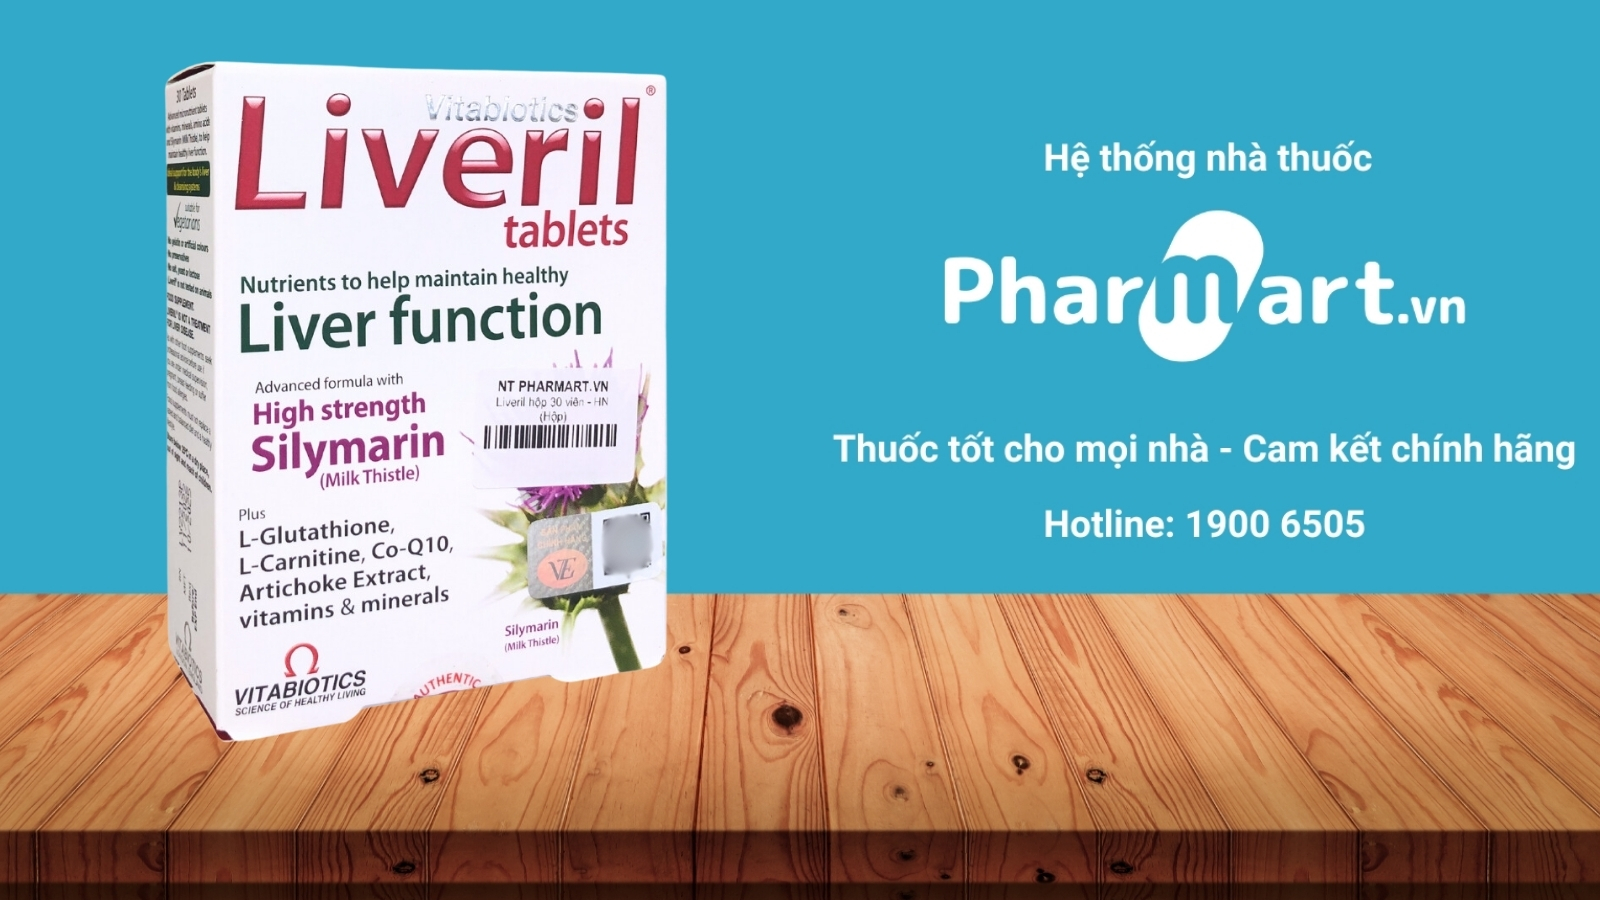 Mua ngay Liveril chính hãng tại Pharmart.vn